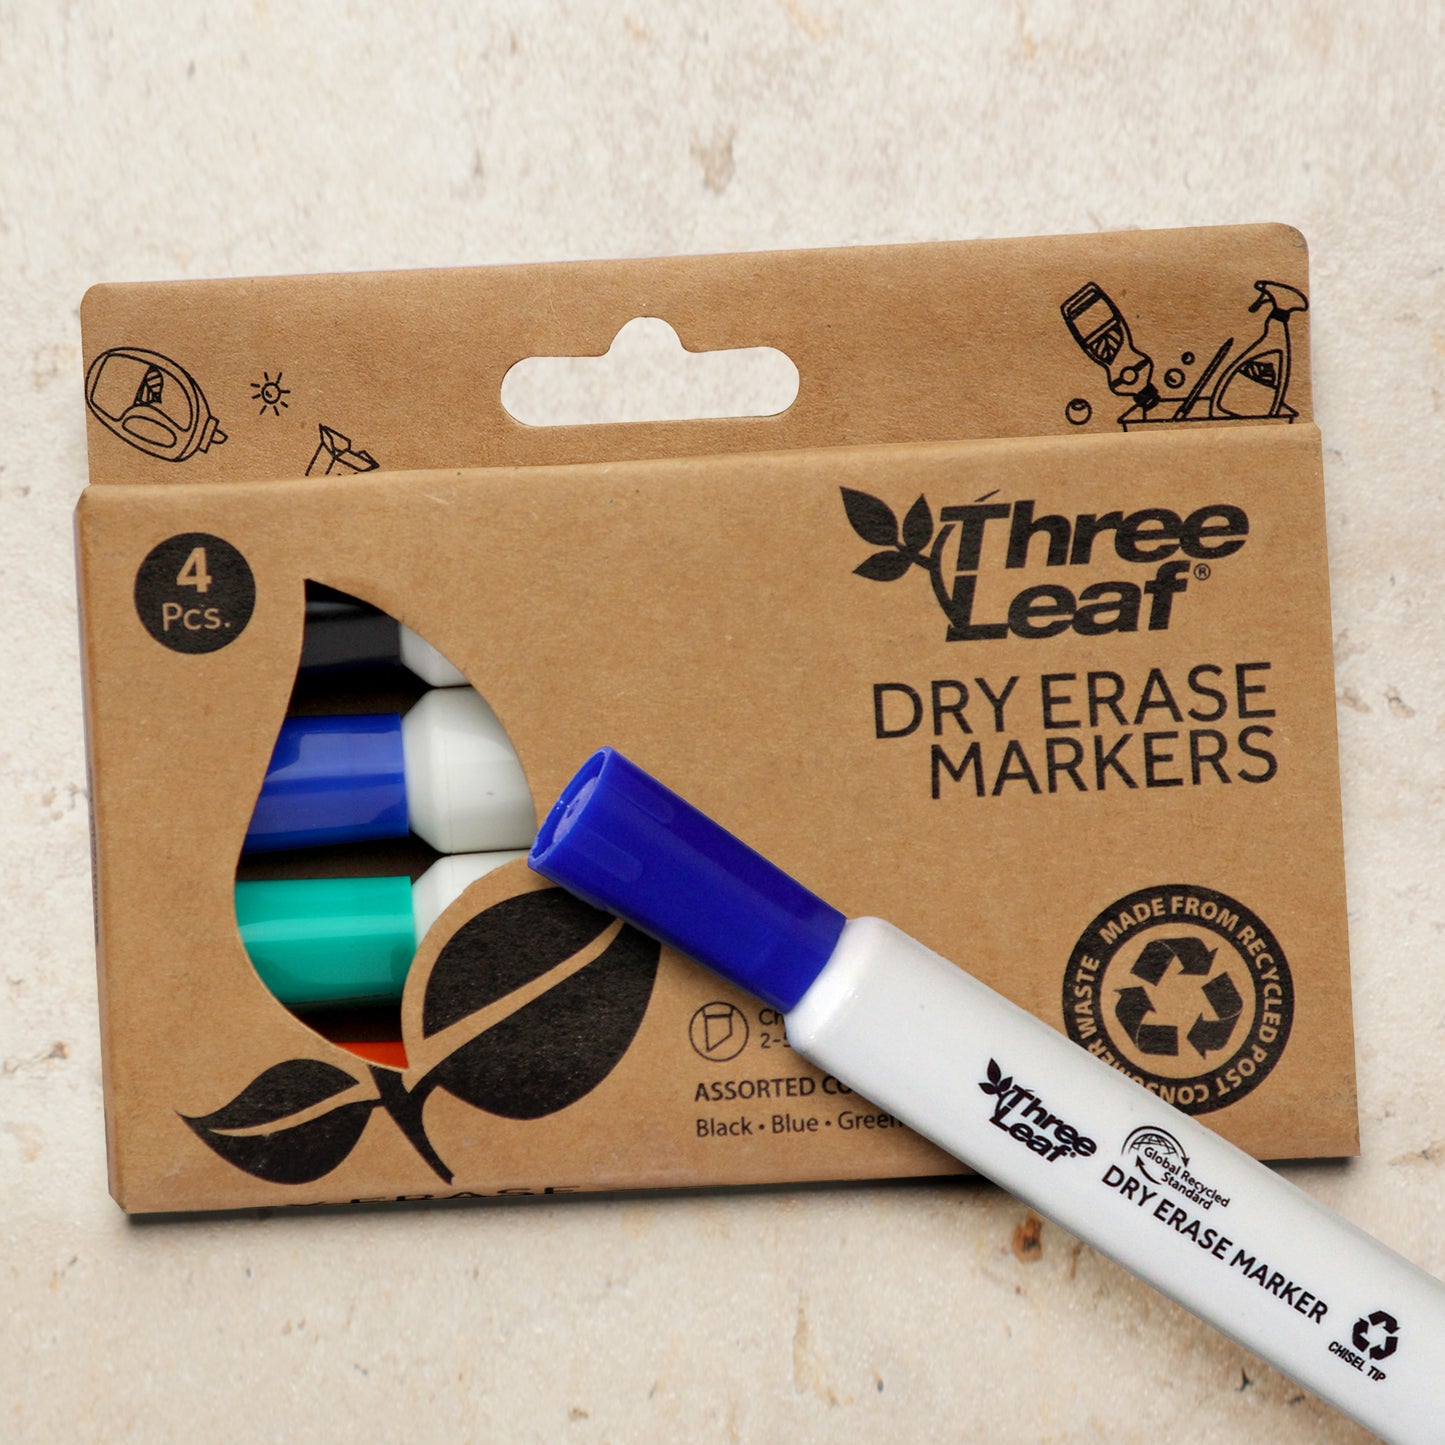 Three Leaf Dry Erase Marker 4 Pack, Assorted, Chisel Tip (72 Pack Per Case)